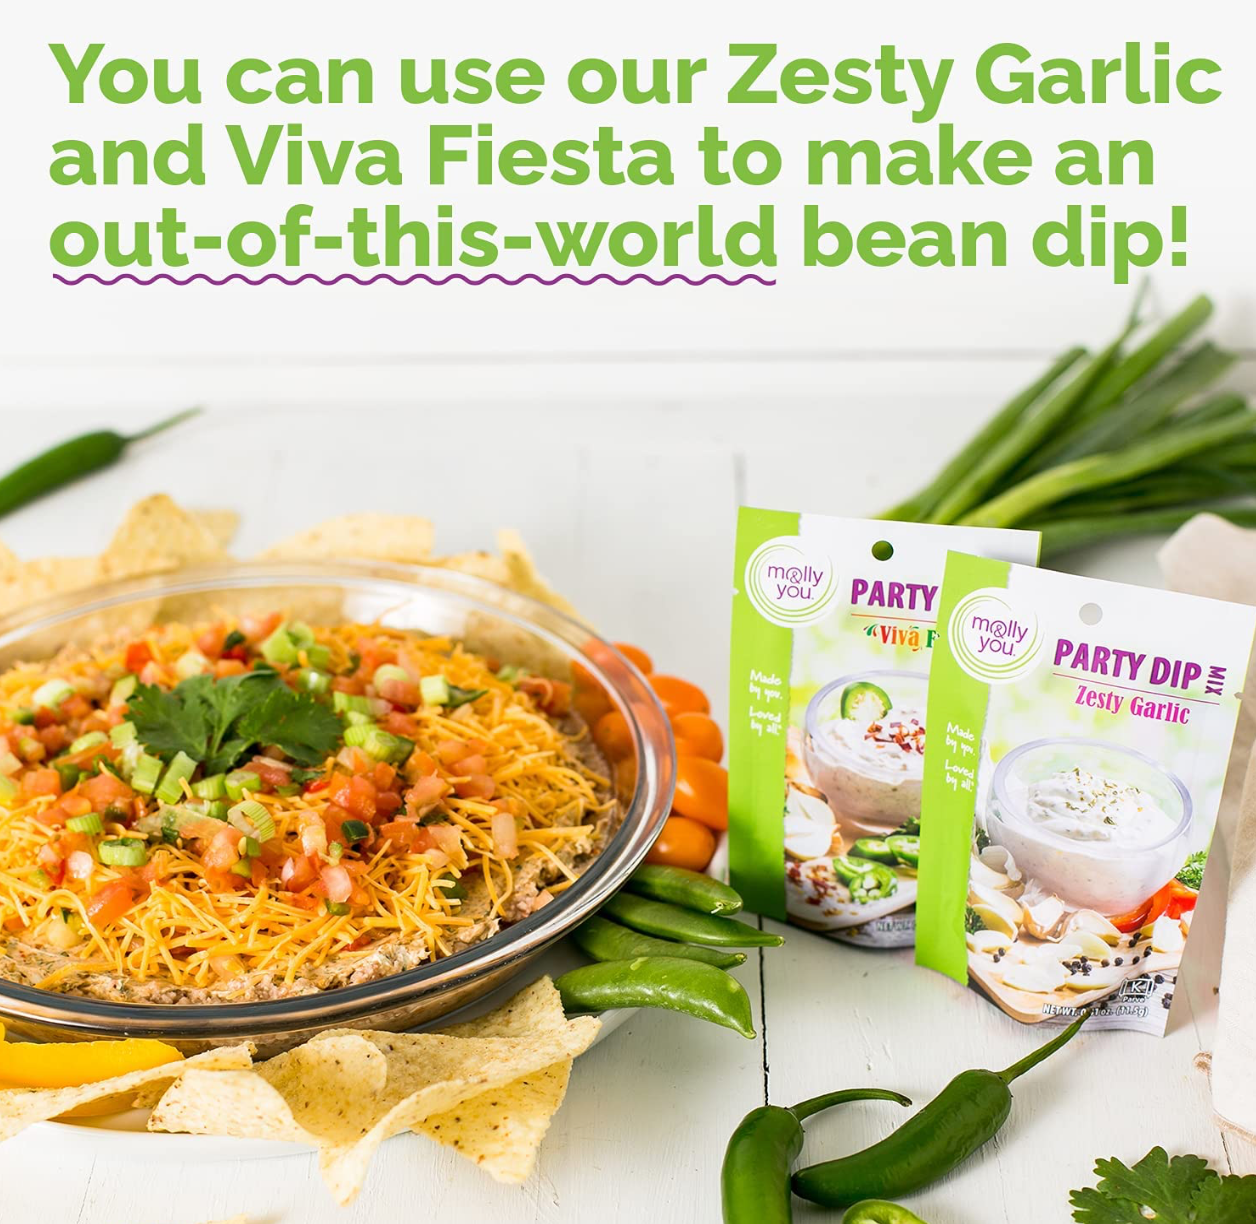 Zesty Garlic and Viva Fiesta make delicious recipes, including a bean dip!